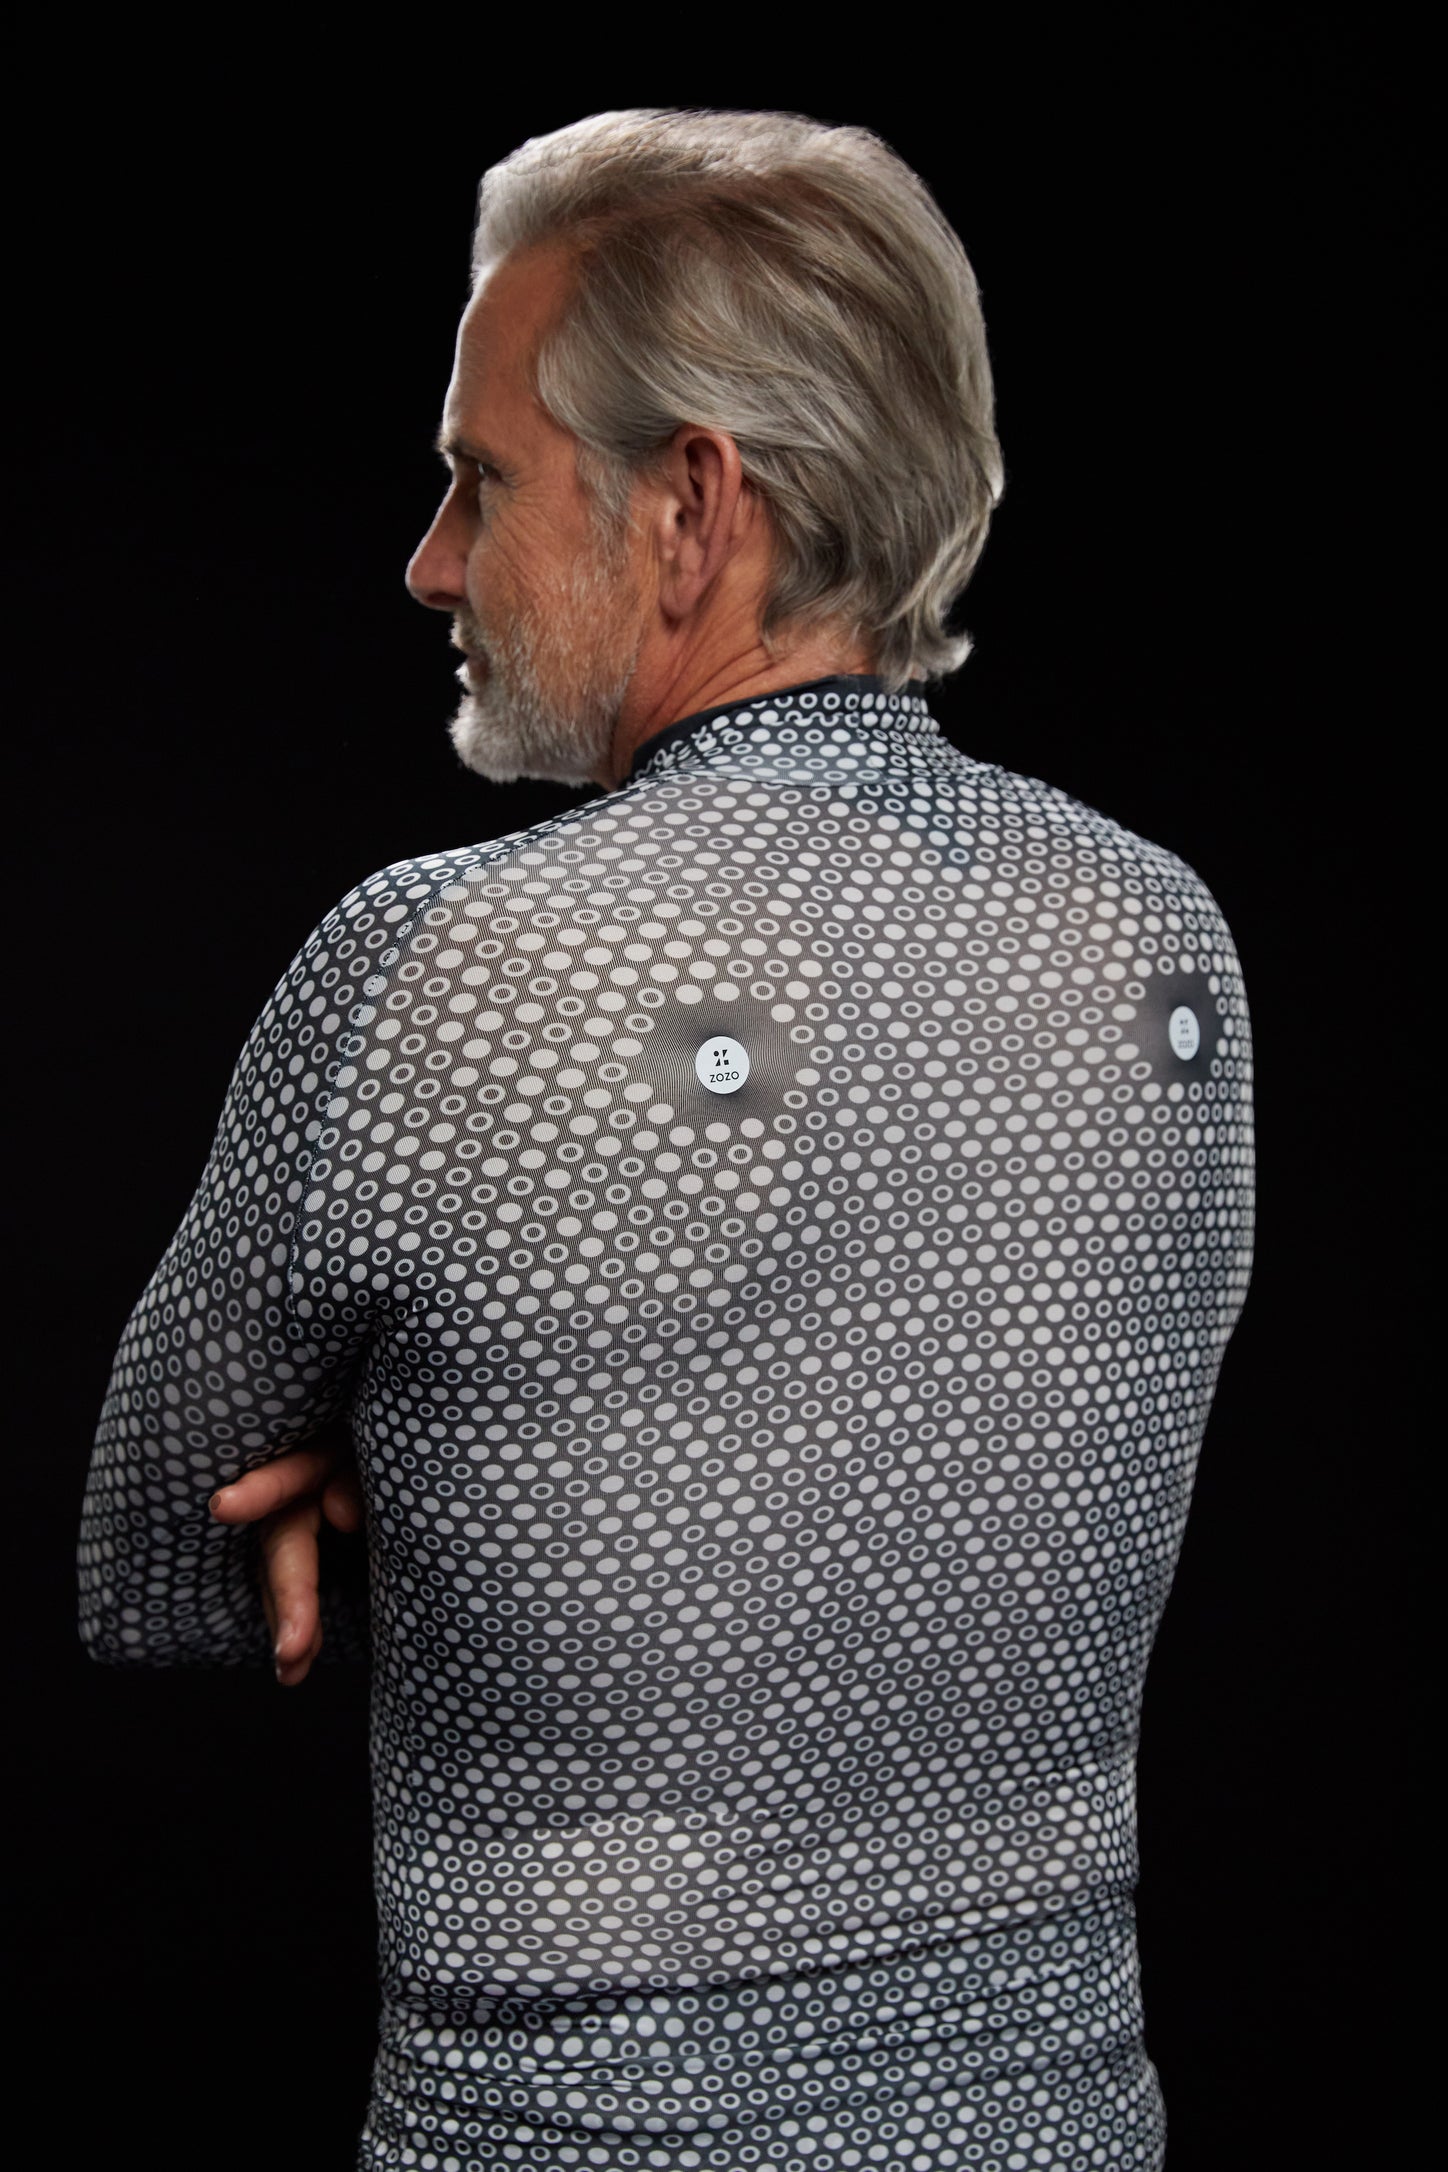 Zozosuit: The bizarre spandex bodysuit revolutionizing the fashion